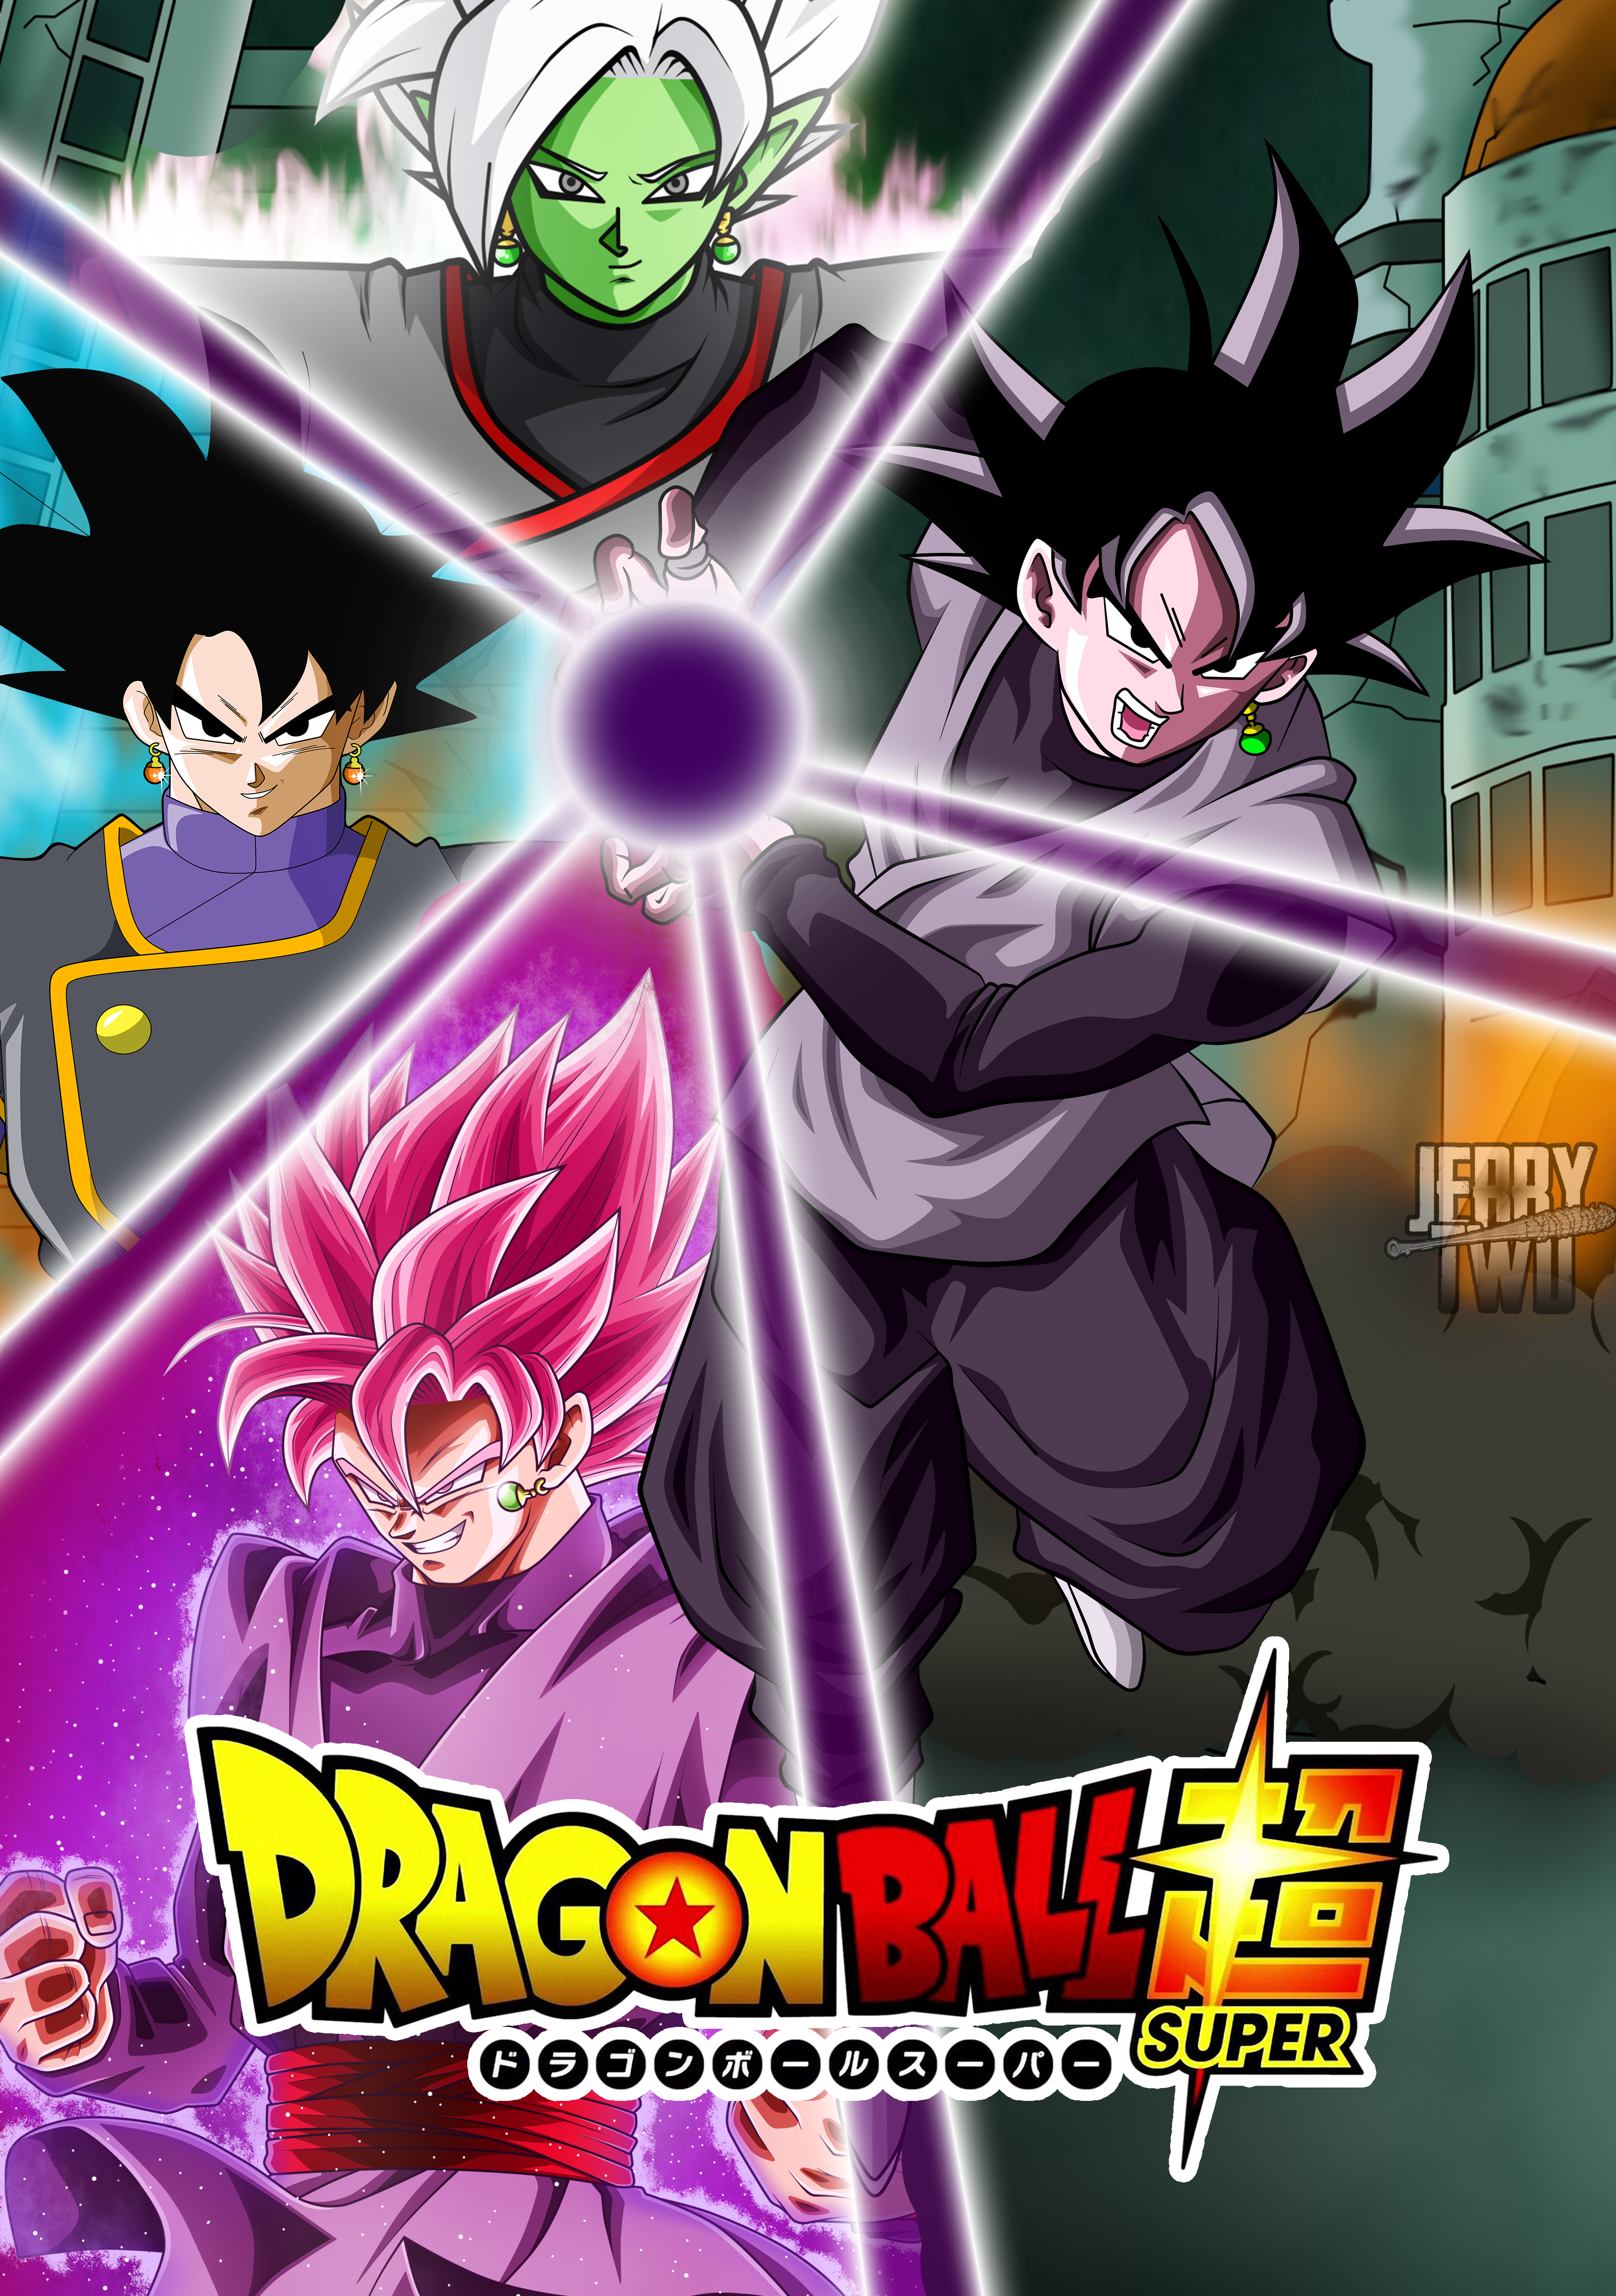 Goku DBS #2 by SaoDVD on DeviantArt  Dragon ball art goku, Dragon ball z,  Goku